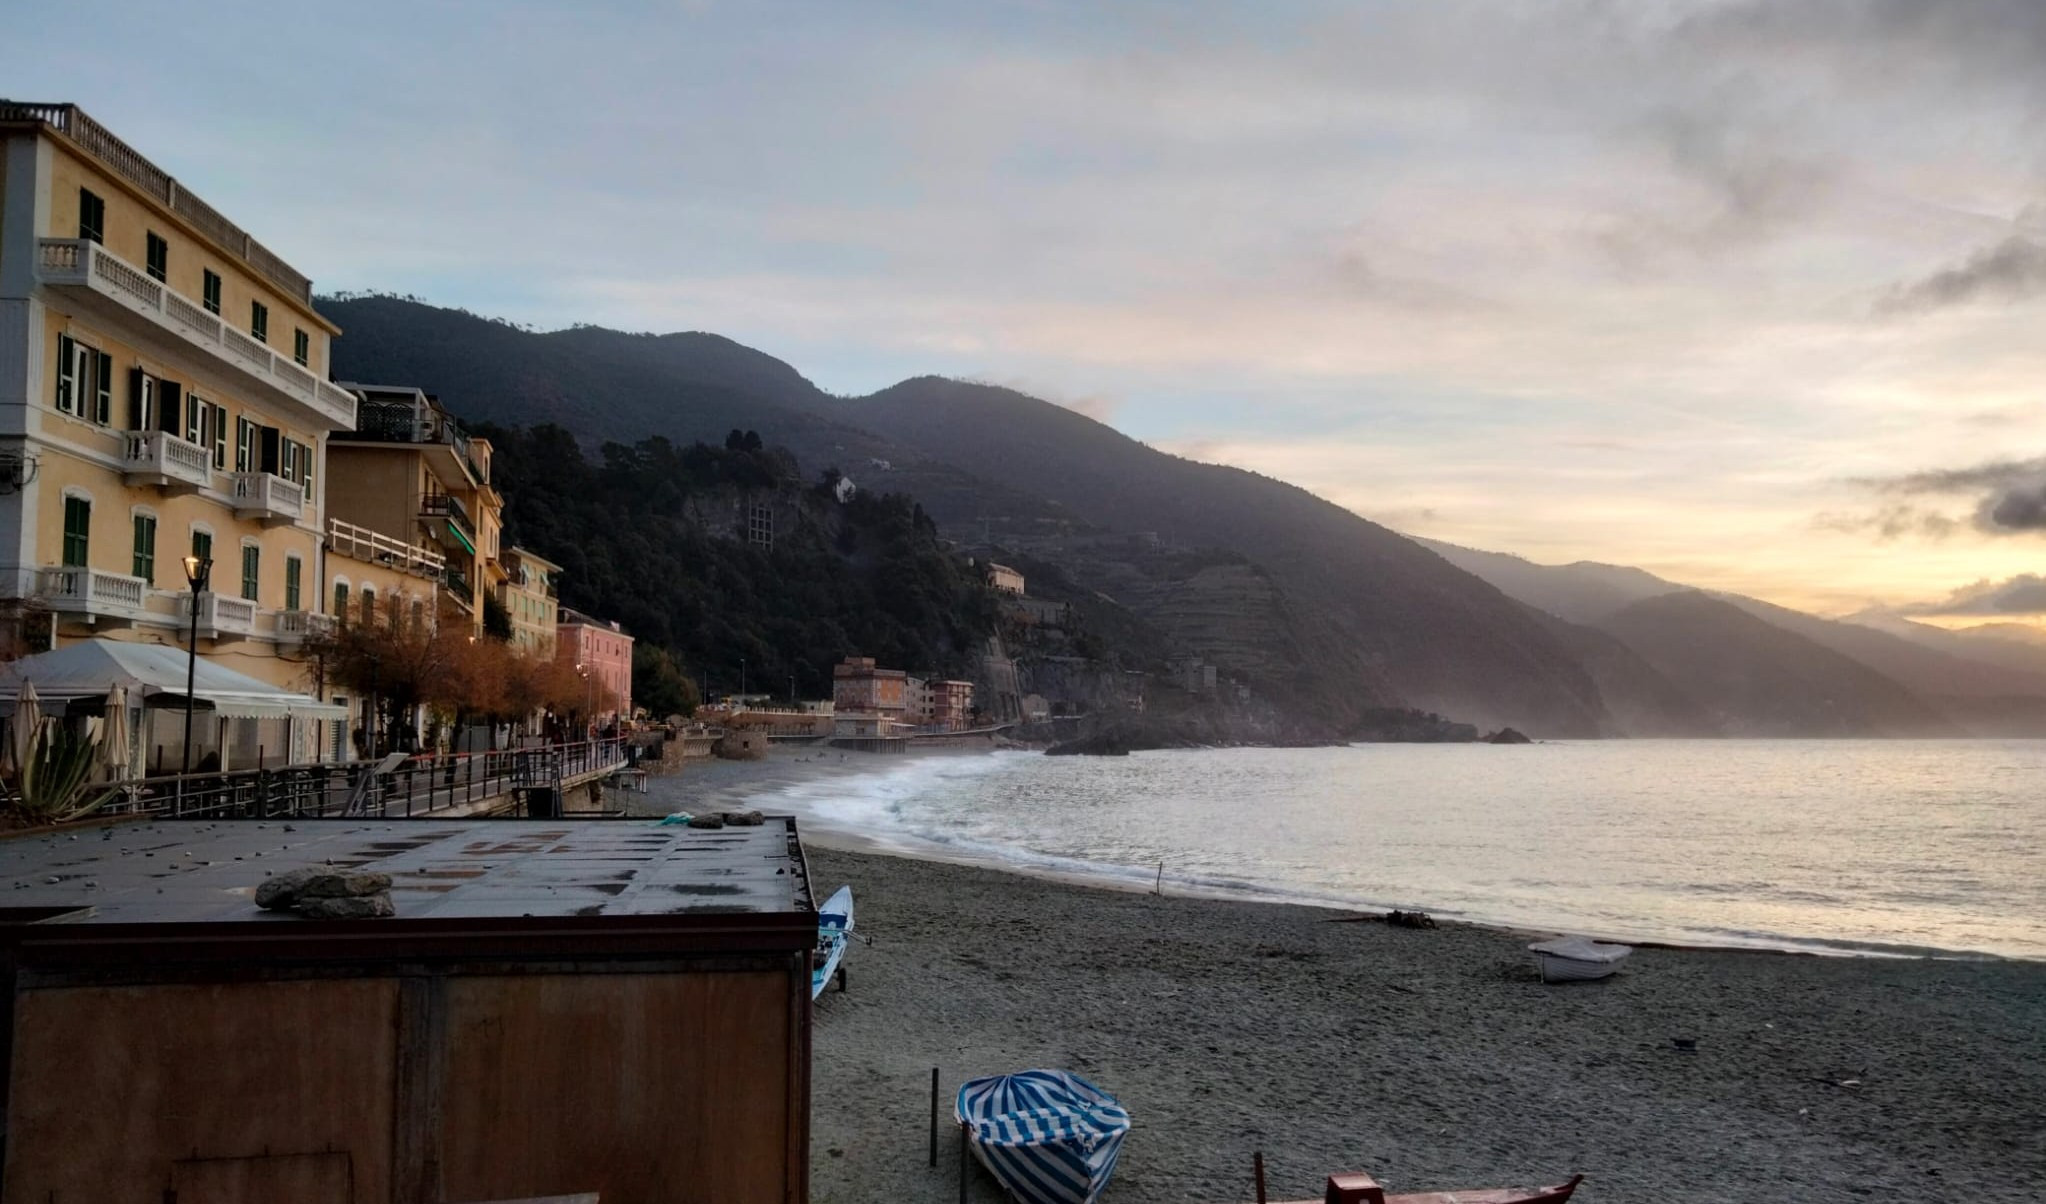 Meteo in Liguria, cielo sereno e temperature in aumento